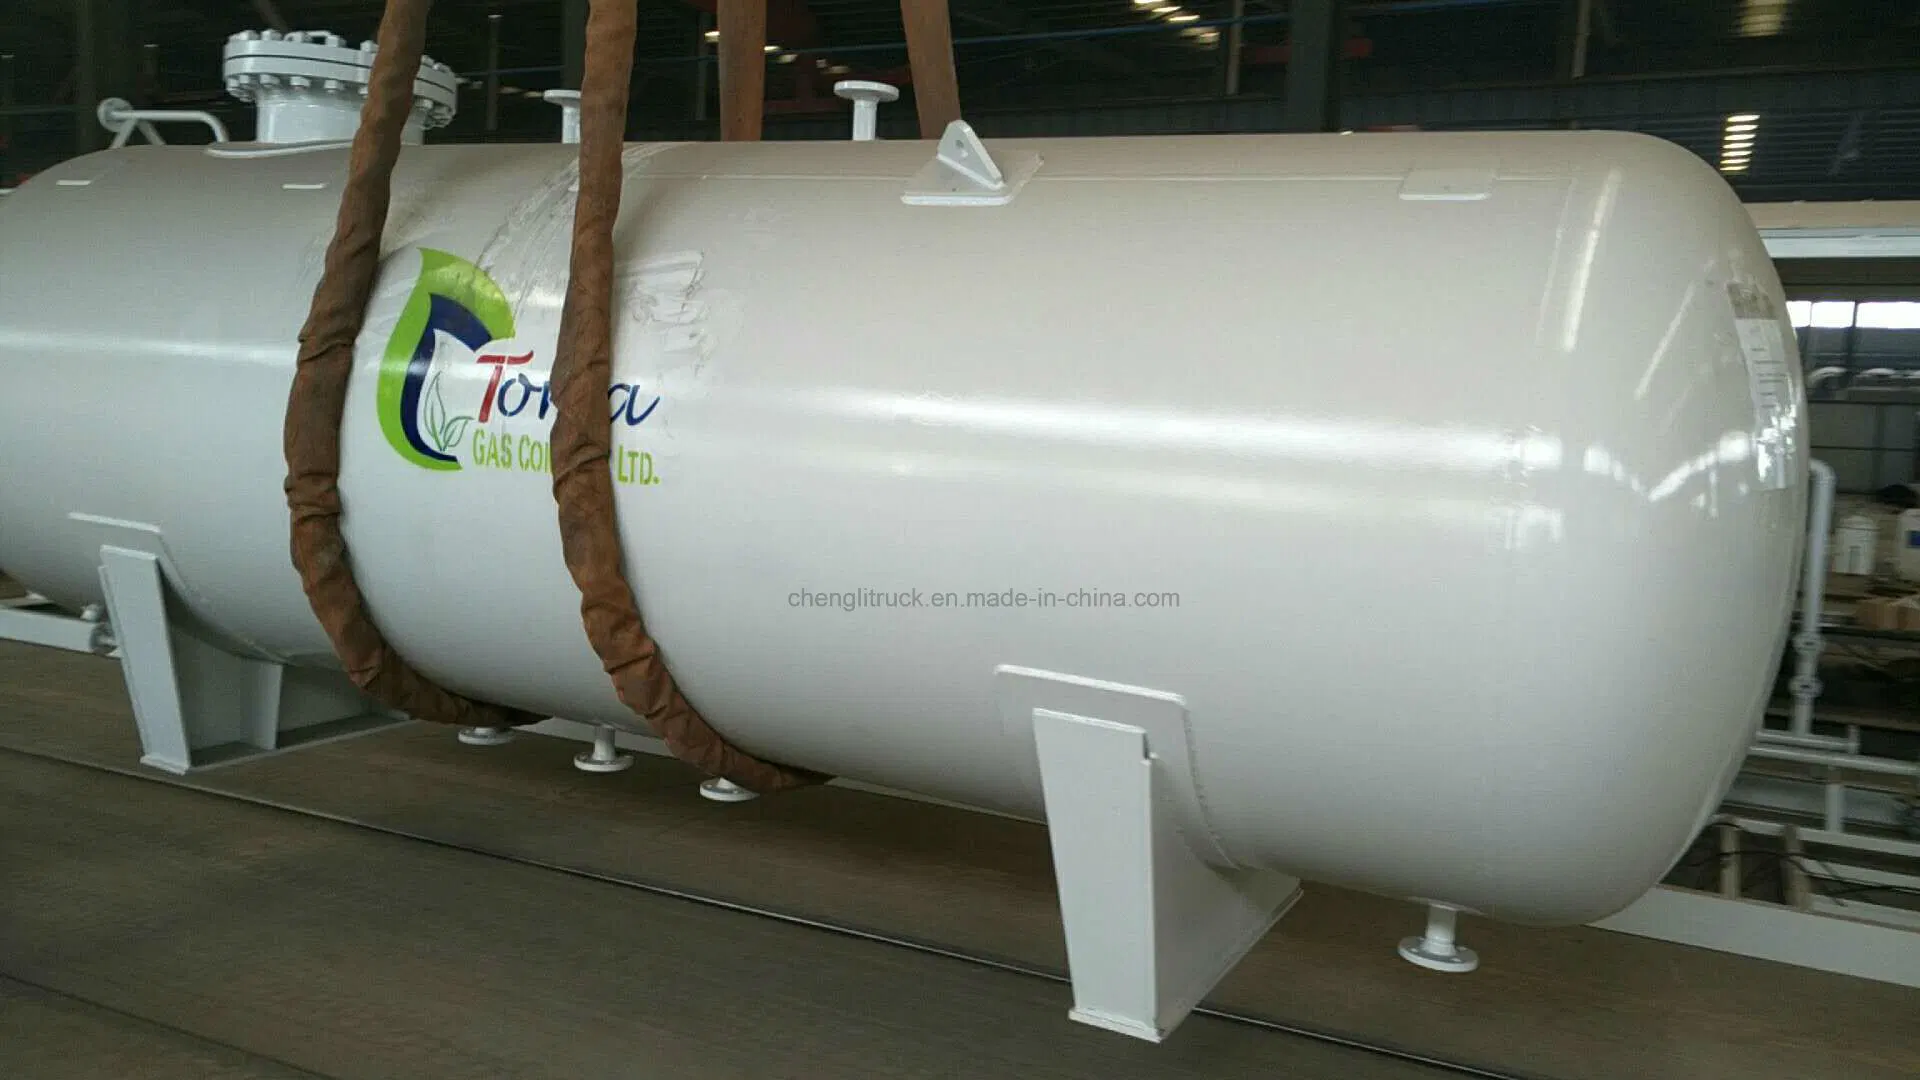 خزان تخزين LPG لتعبئة الغاز الصغير سعة 10 سم2 و5 أطنان مترين